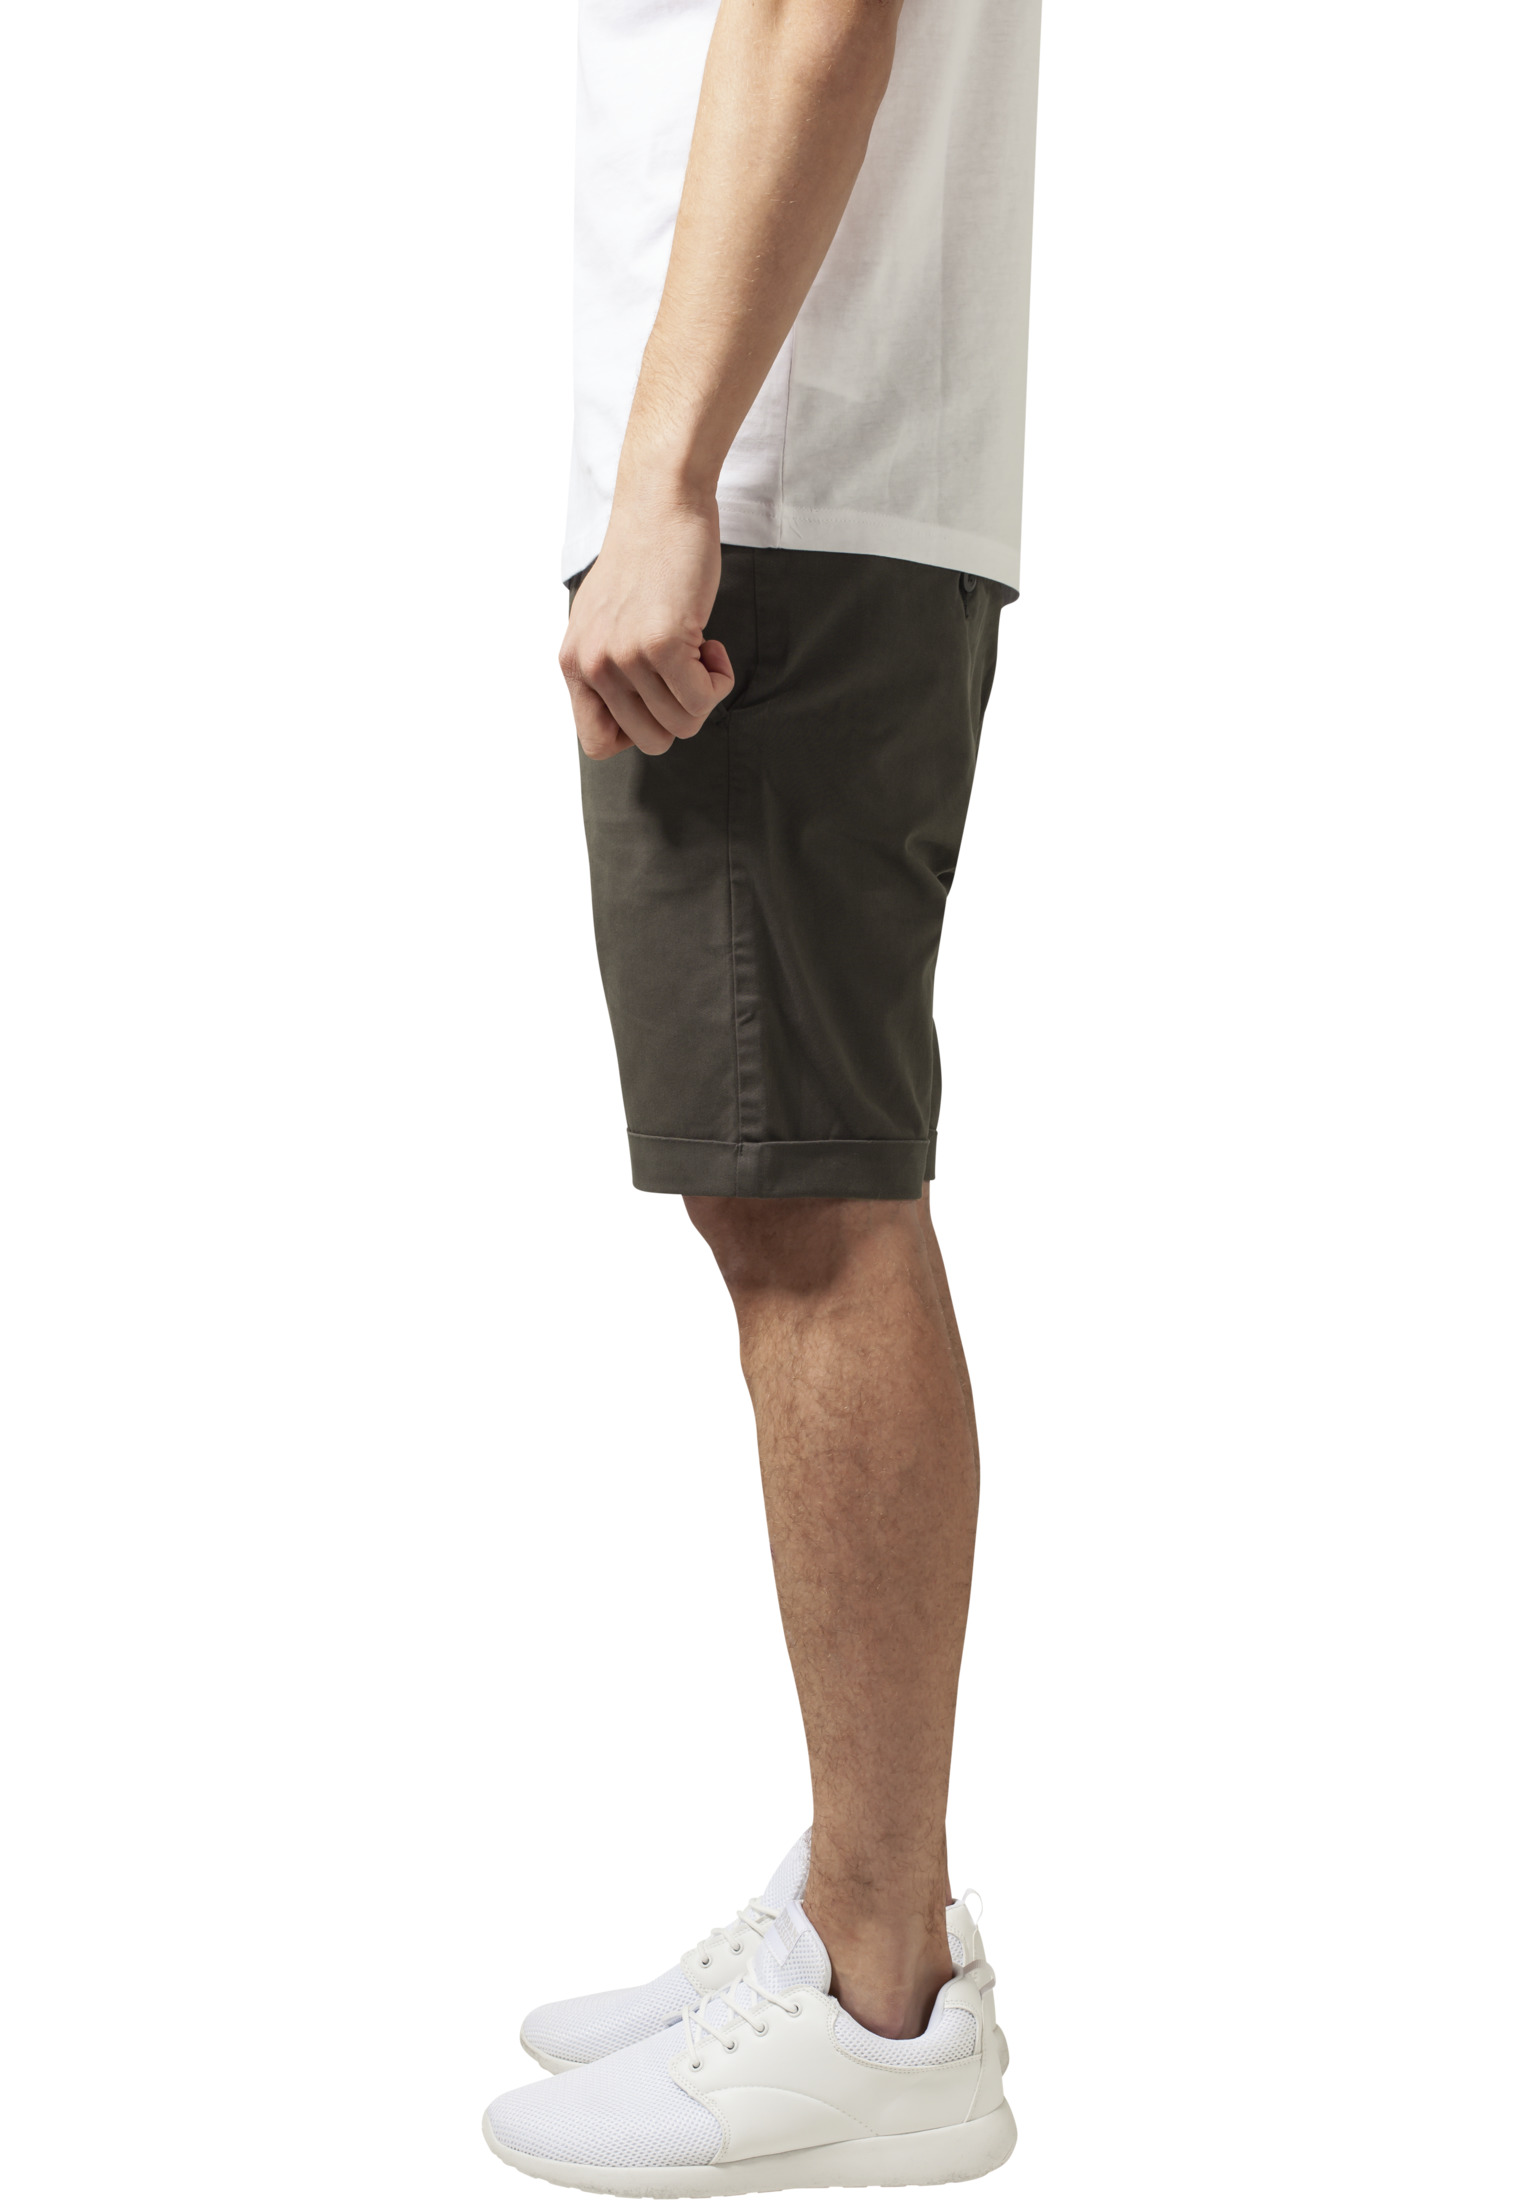 Cargo Hosen & Shorts Stretch Turnup Chino Shorts in Farbe dark olive